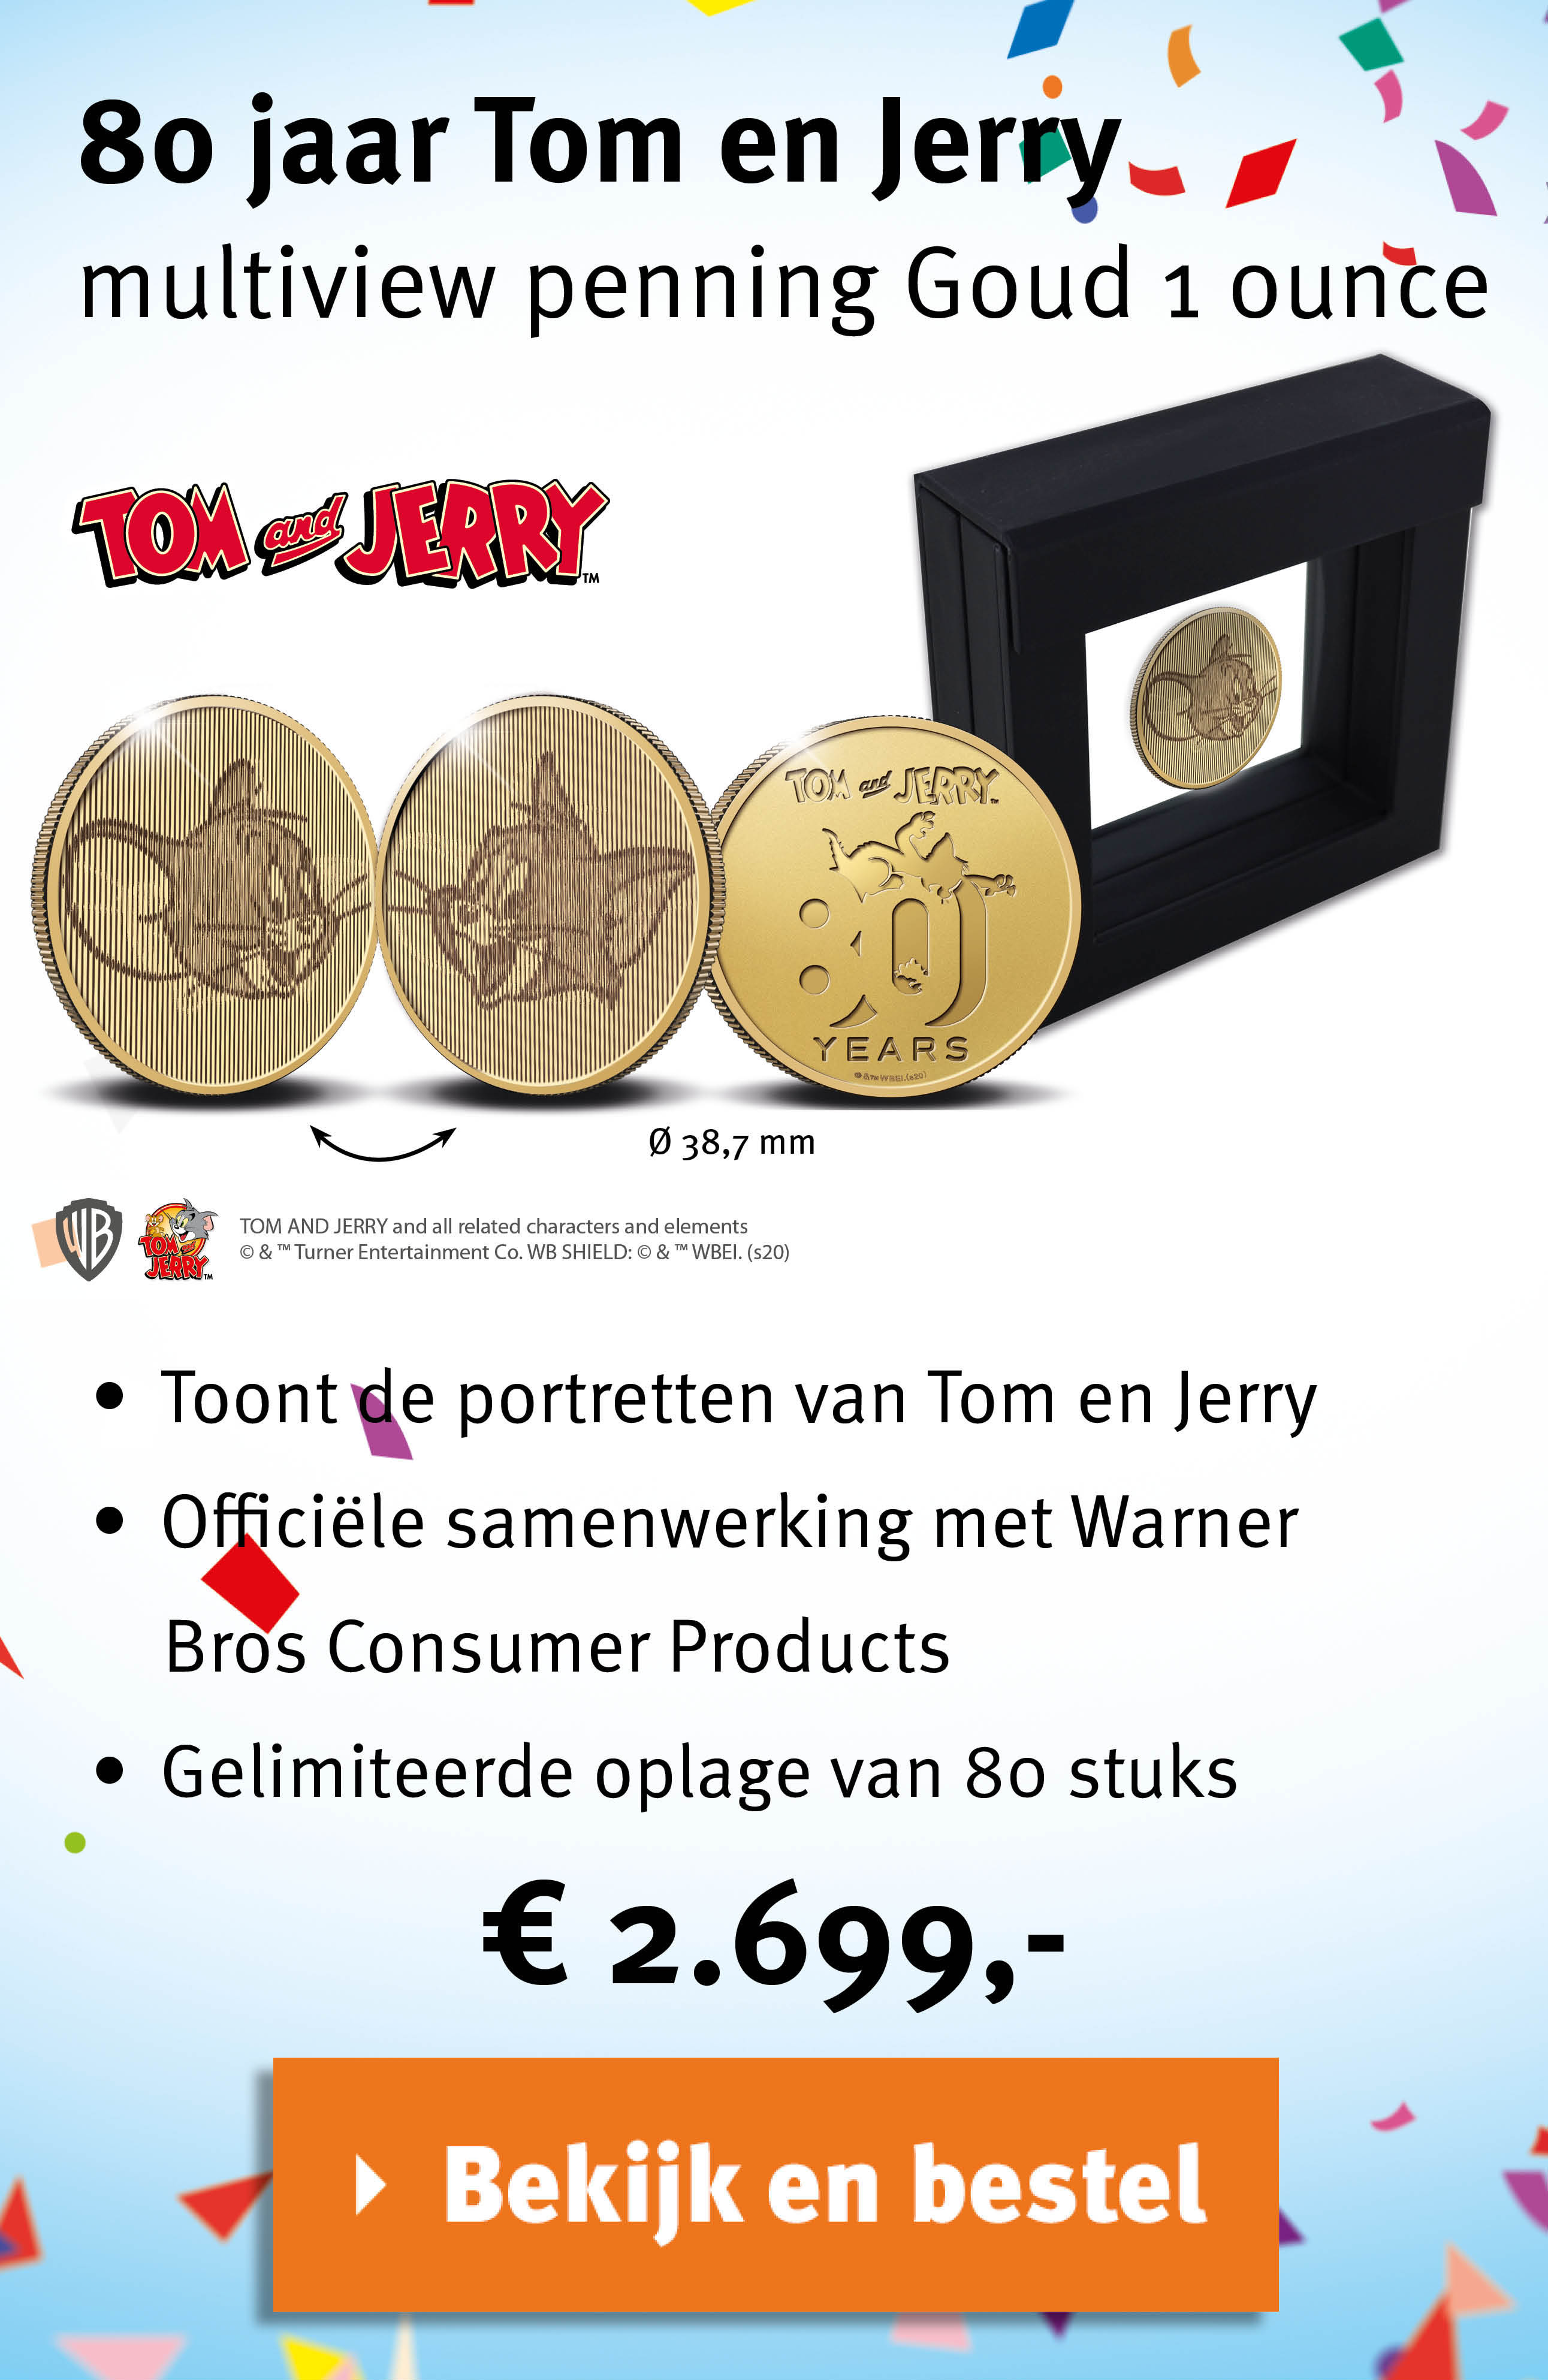 Bekijk en bestel: 80 jaar Tom en Jerry multiview penning Goud 1 ounce